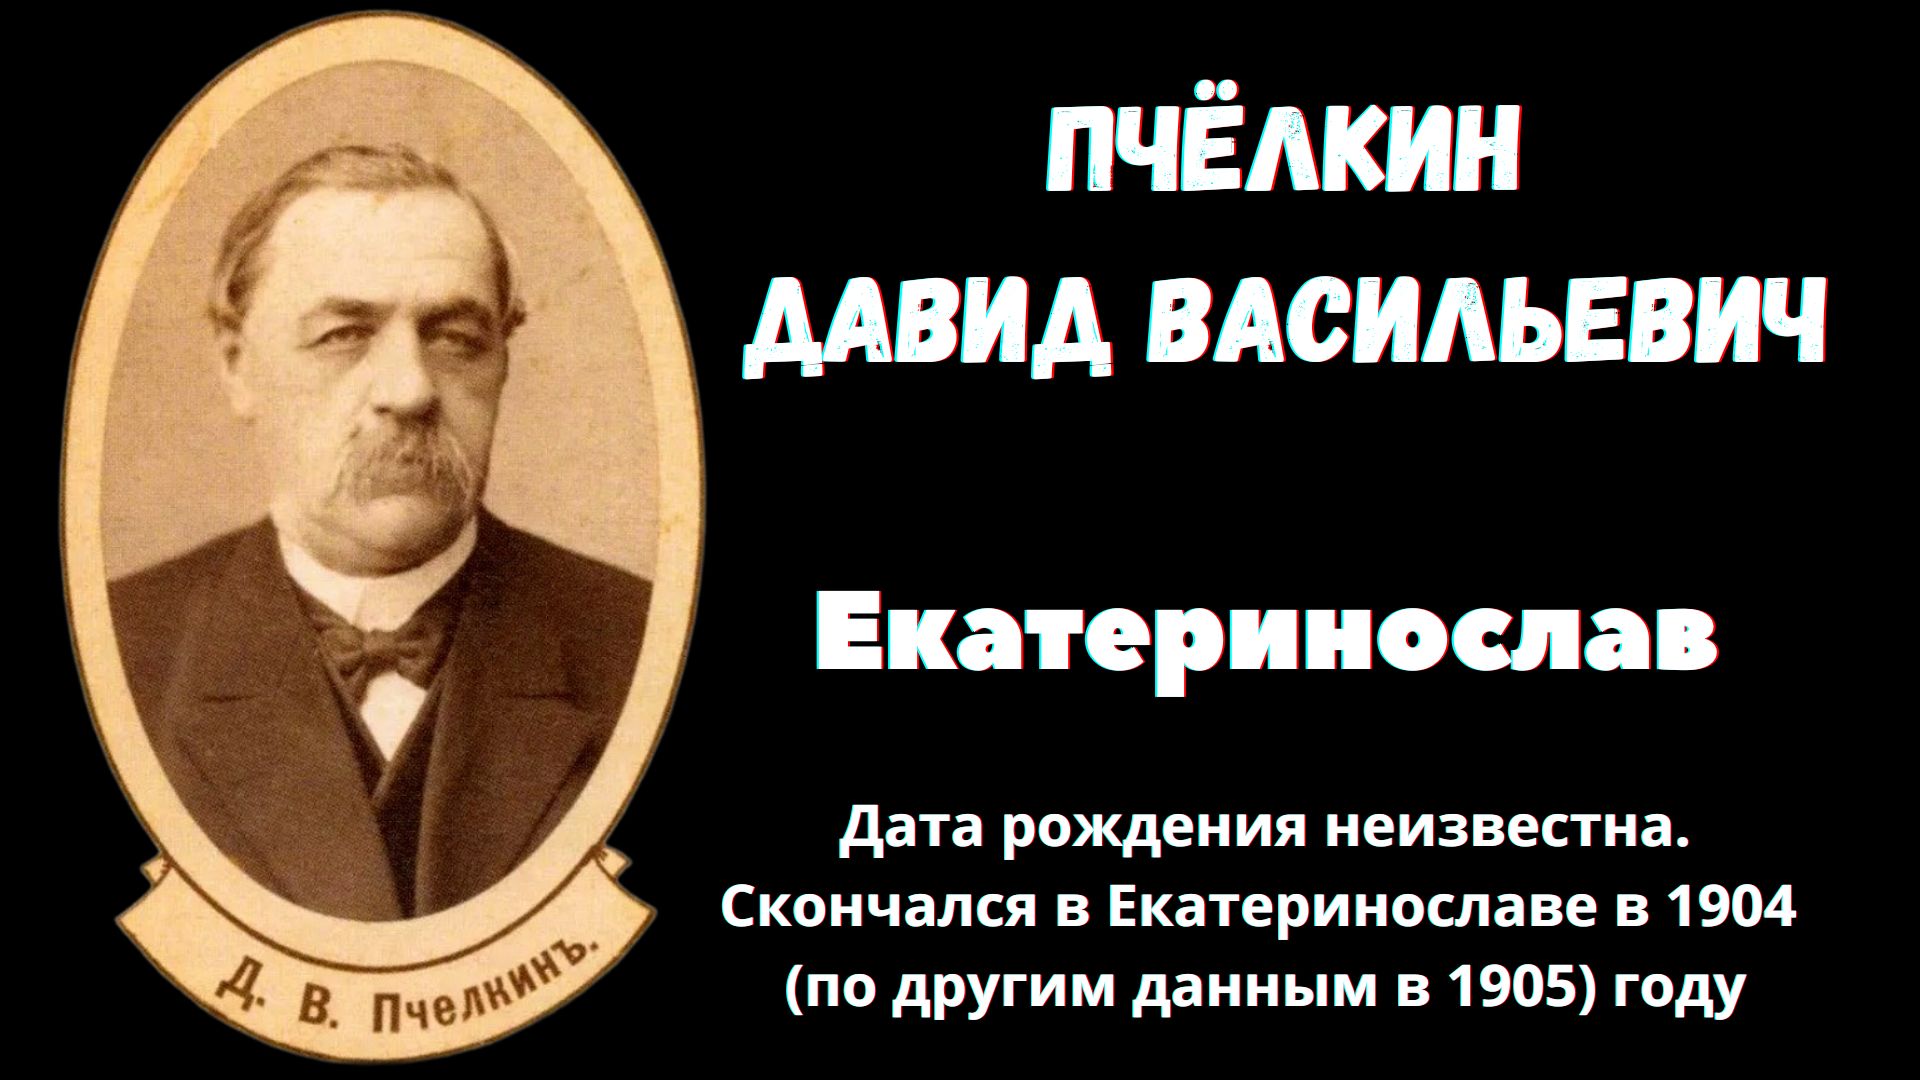 Давид Пчёлкин - купец первой гильдии, Екатеринослав.